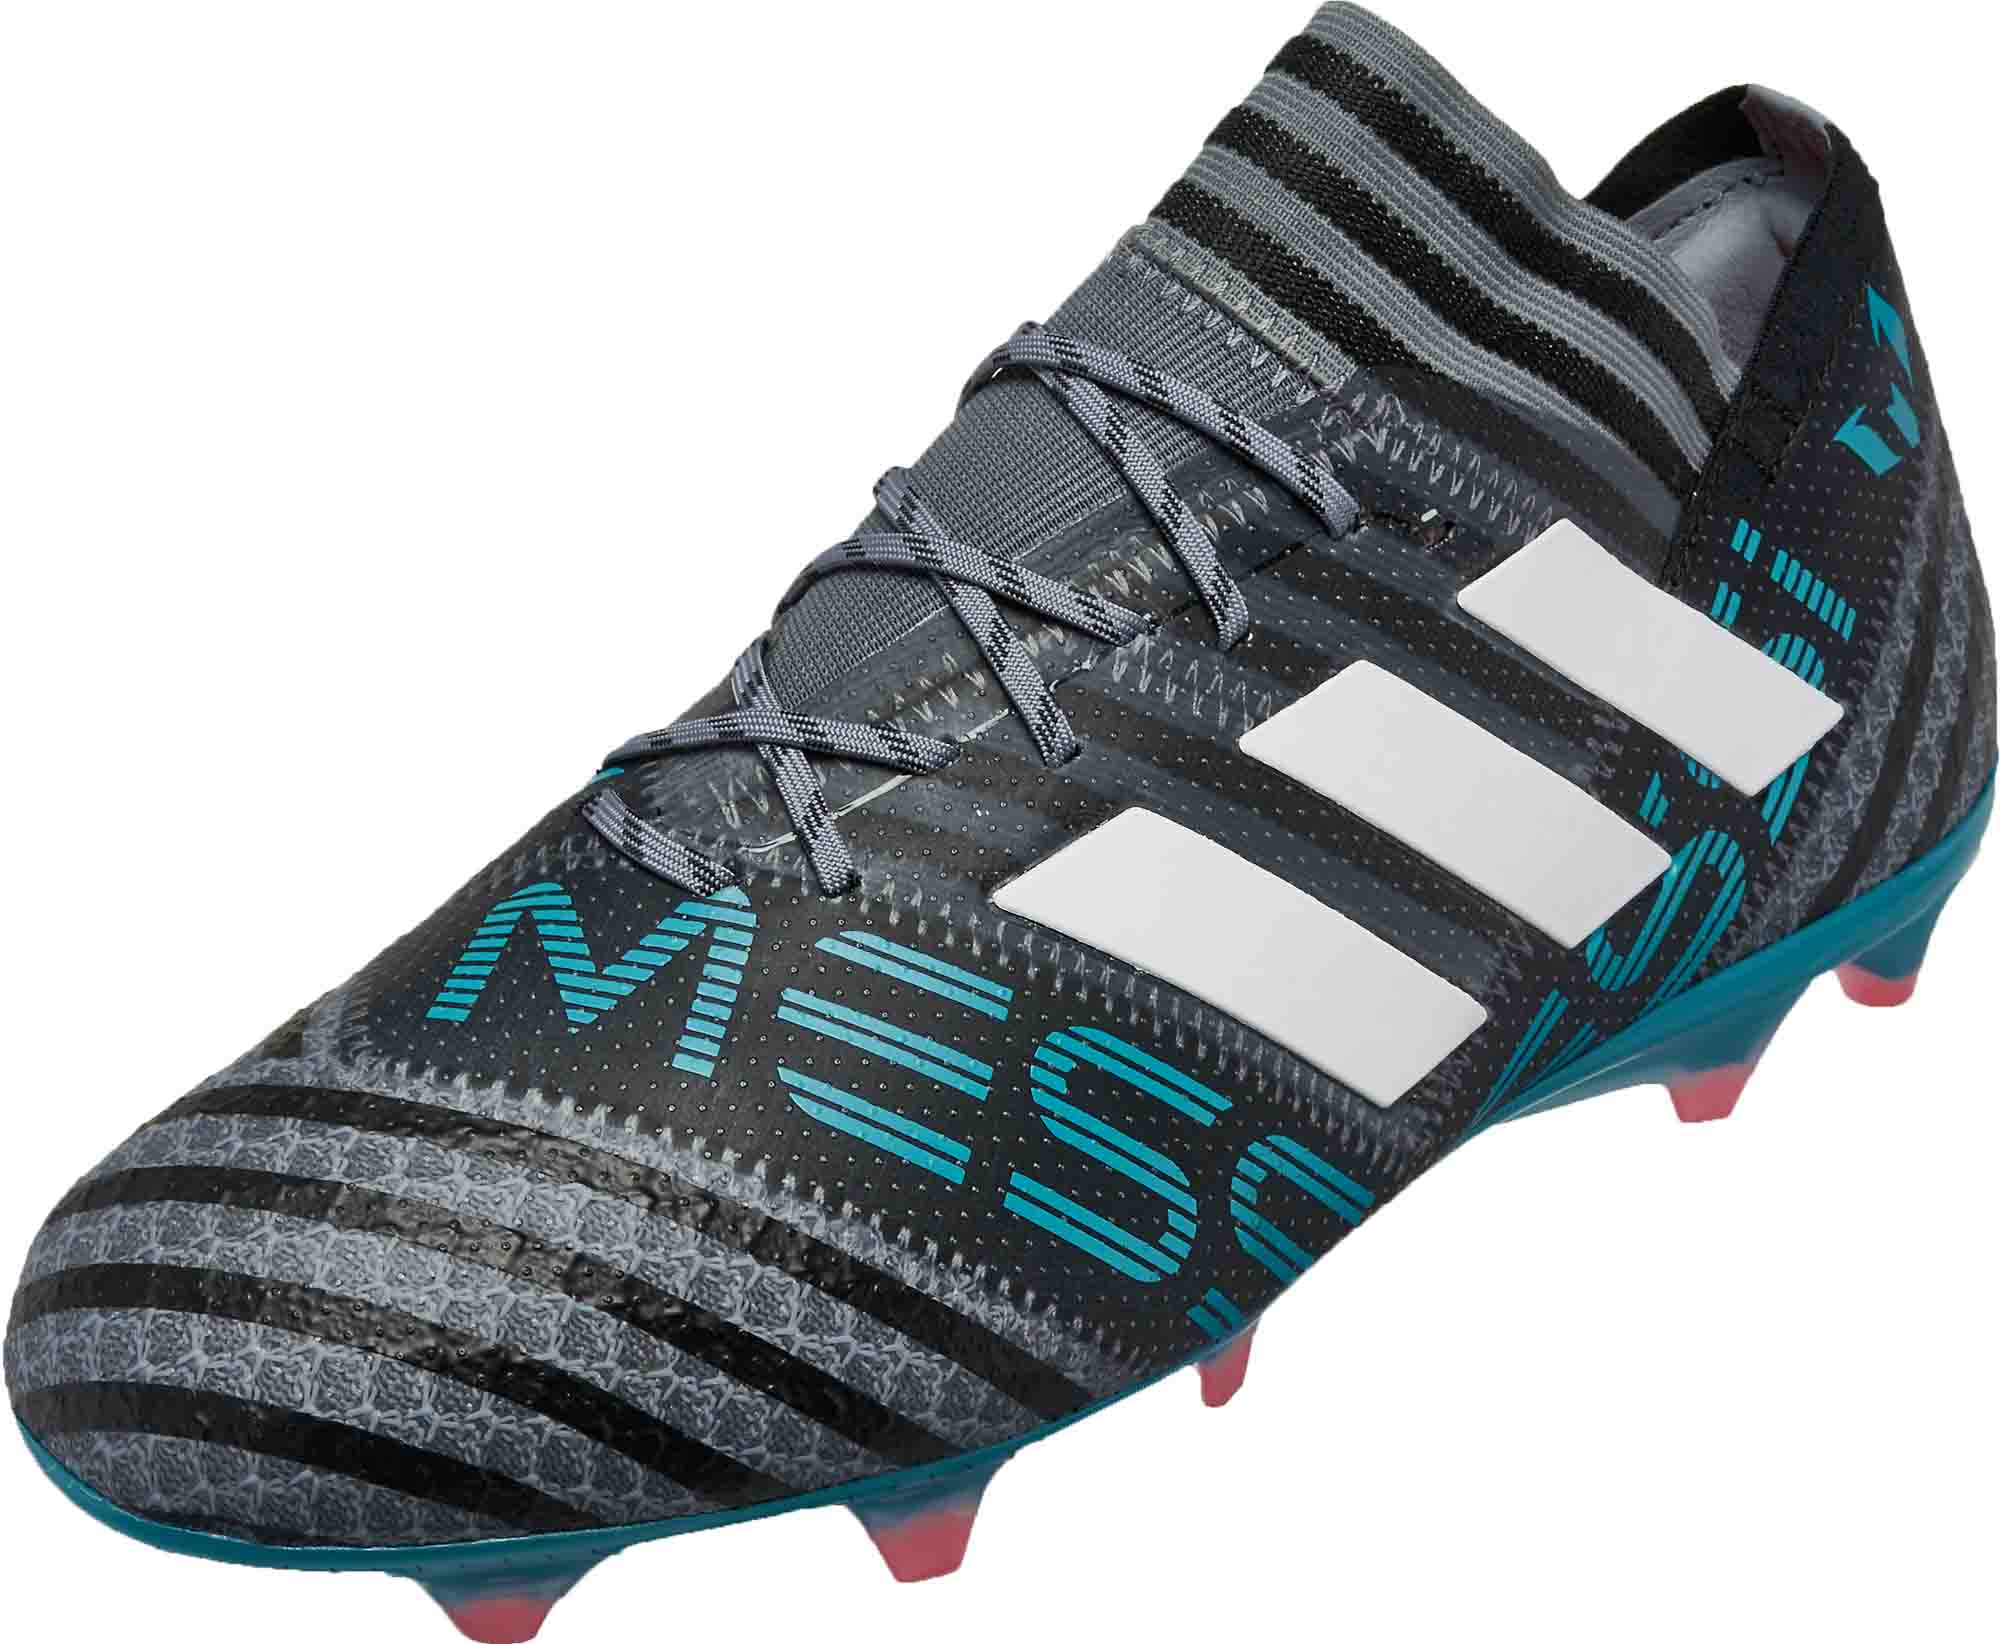 adidas Messi Nemeziz 17.1 - Grey and White